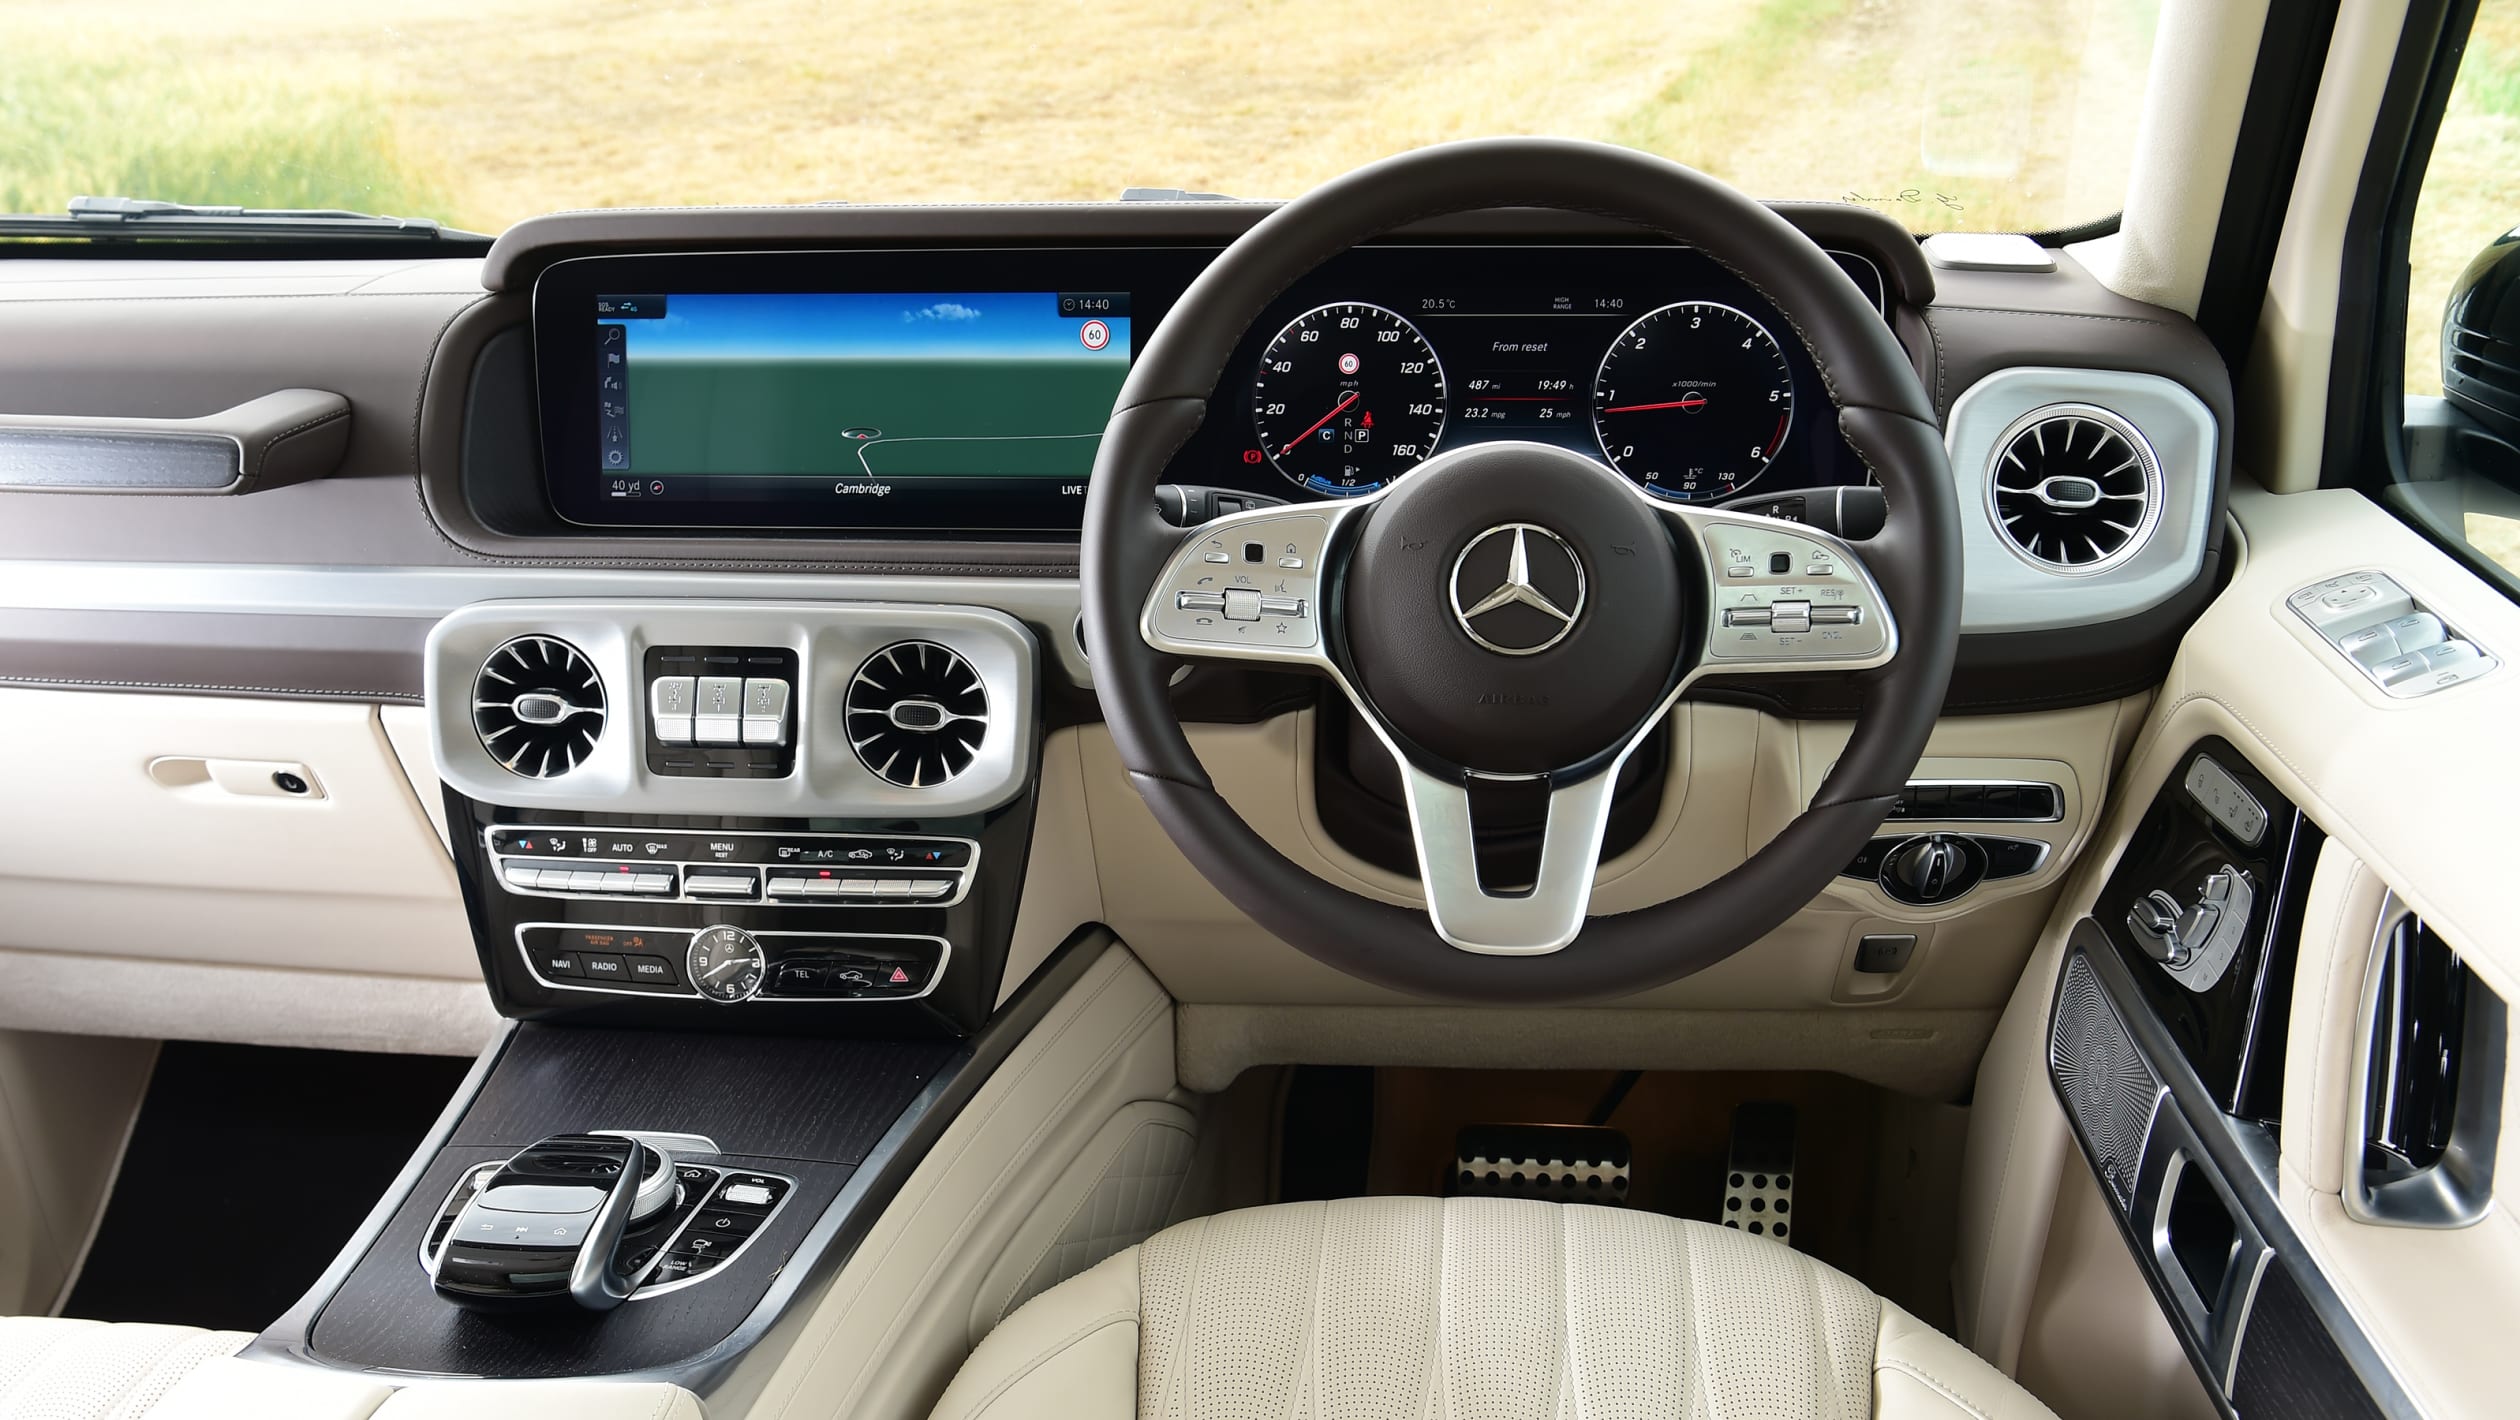 Mercedes Benz G400d Review 2021 10